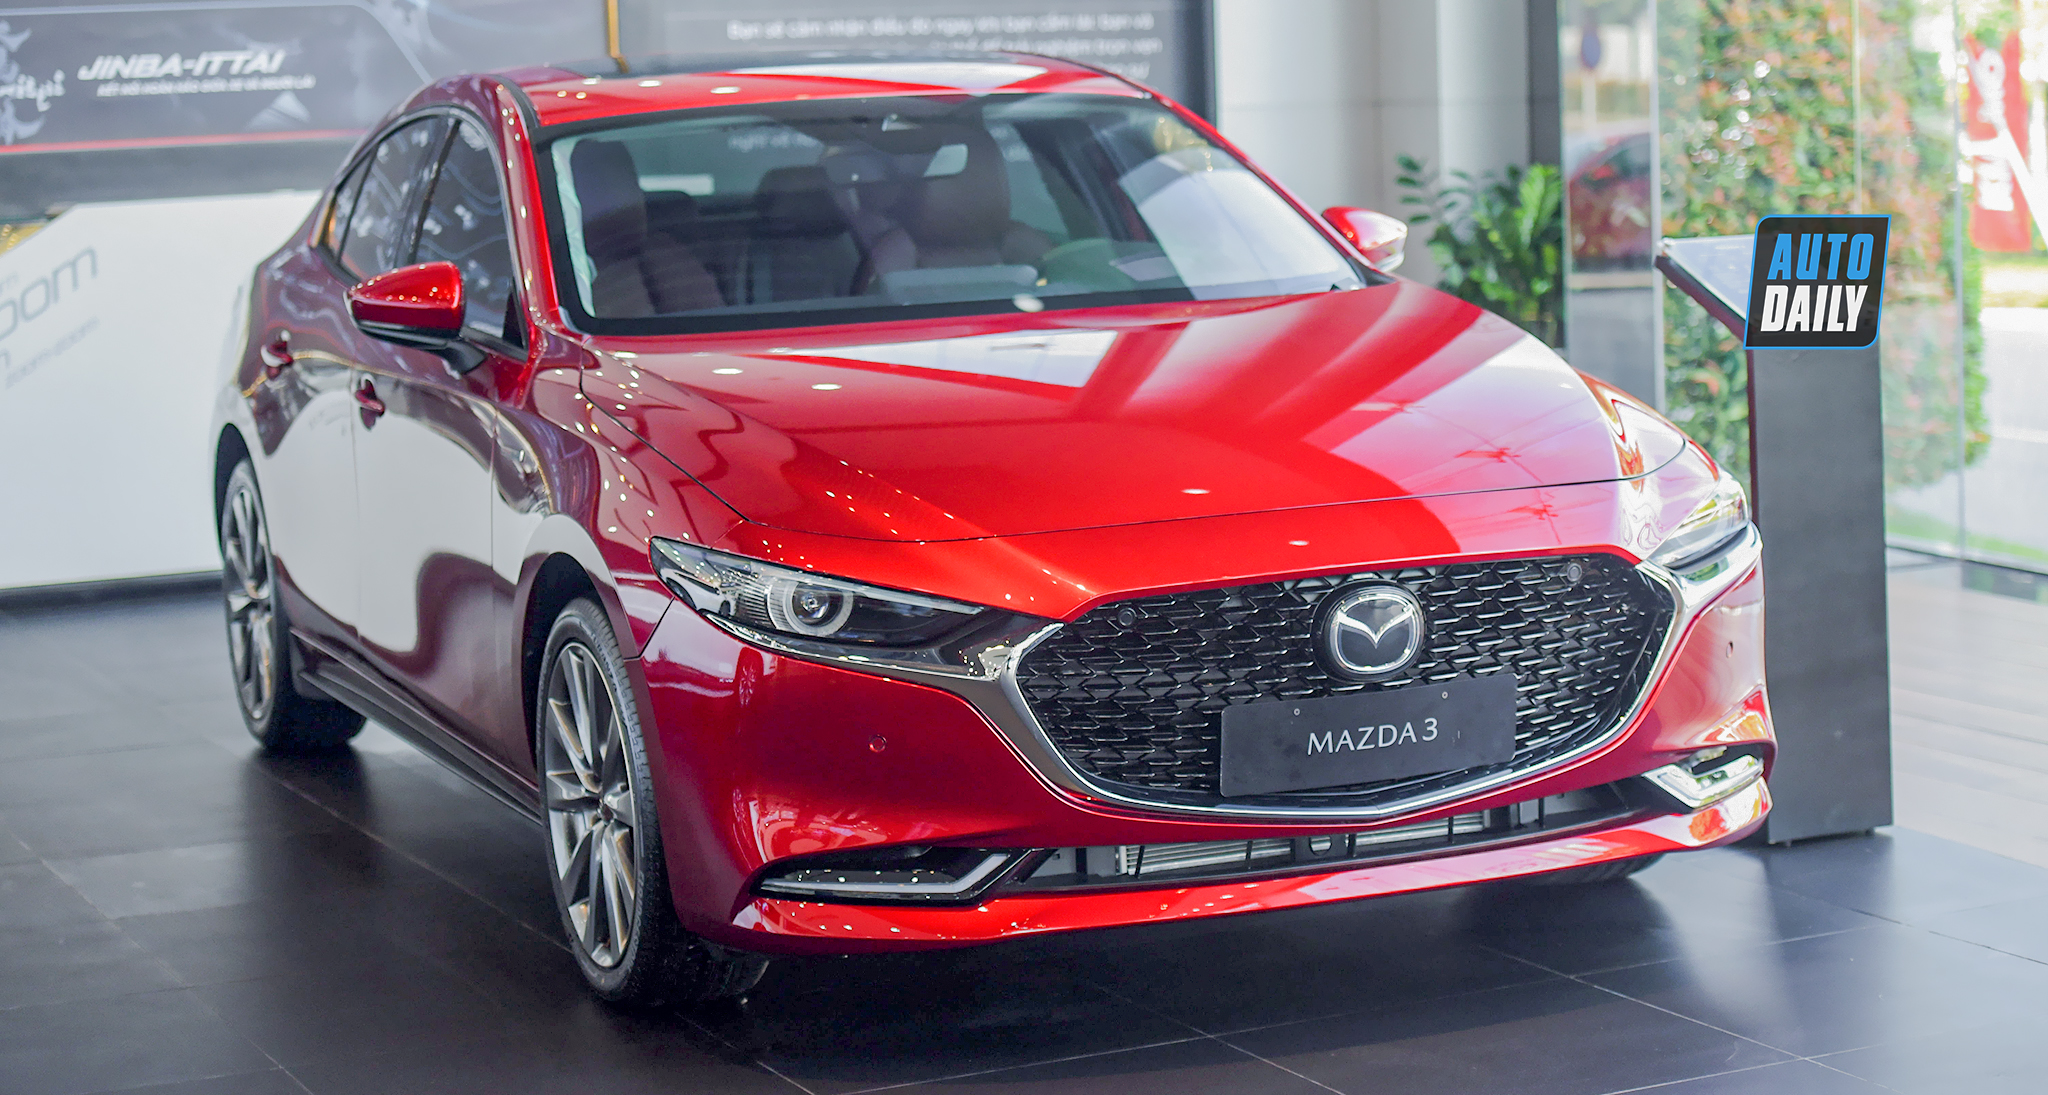 Tăng 20 triệu, Mazda3 2020 bản kỉ niệm 100 năm có gì đặc biệt?